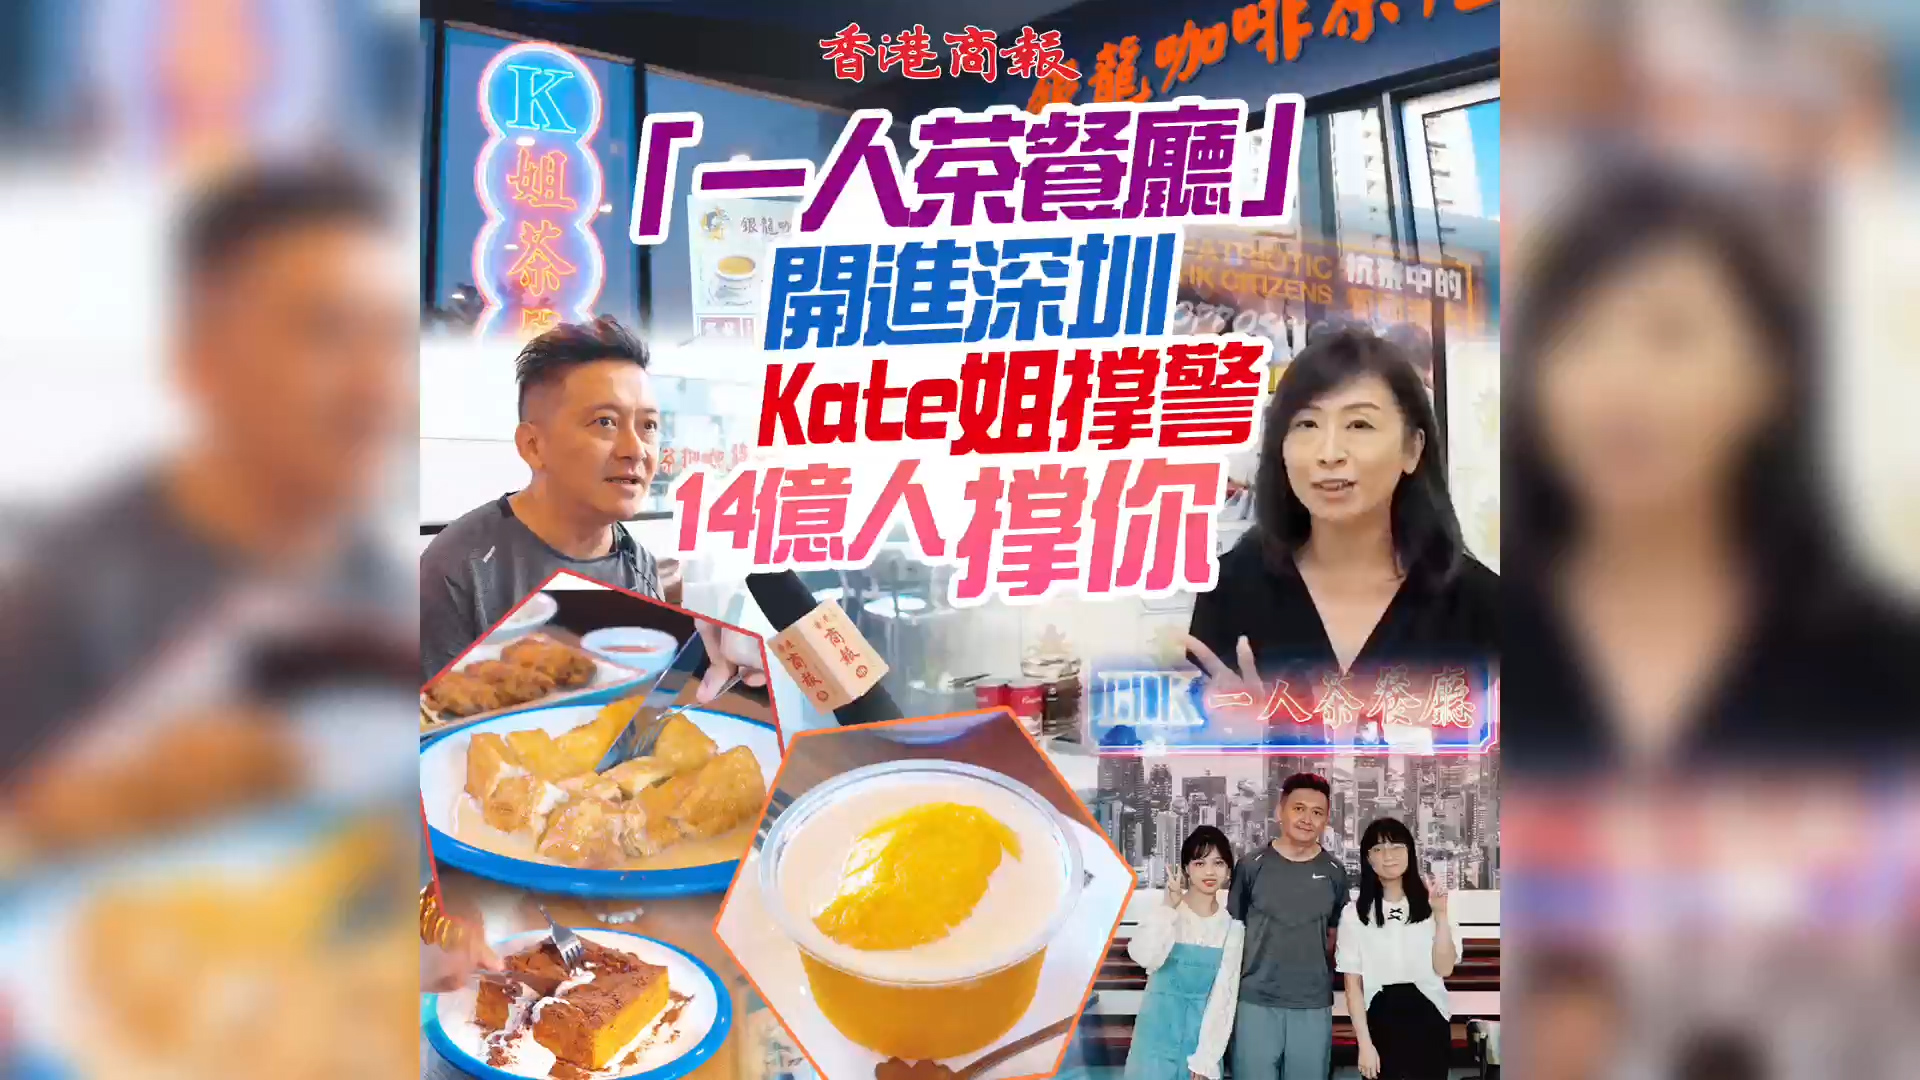 【雙城Look】有片 |  「一人茶餐廳」開進深圳 Kate姐撐警 14億人撐你